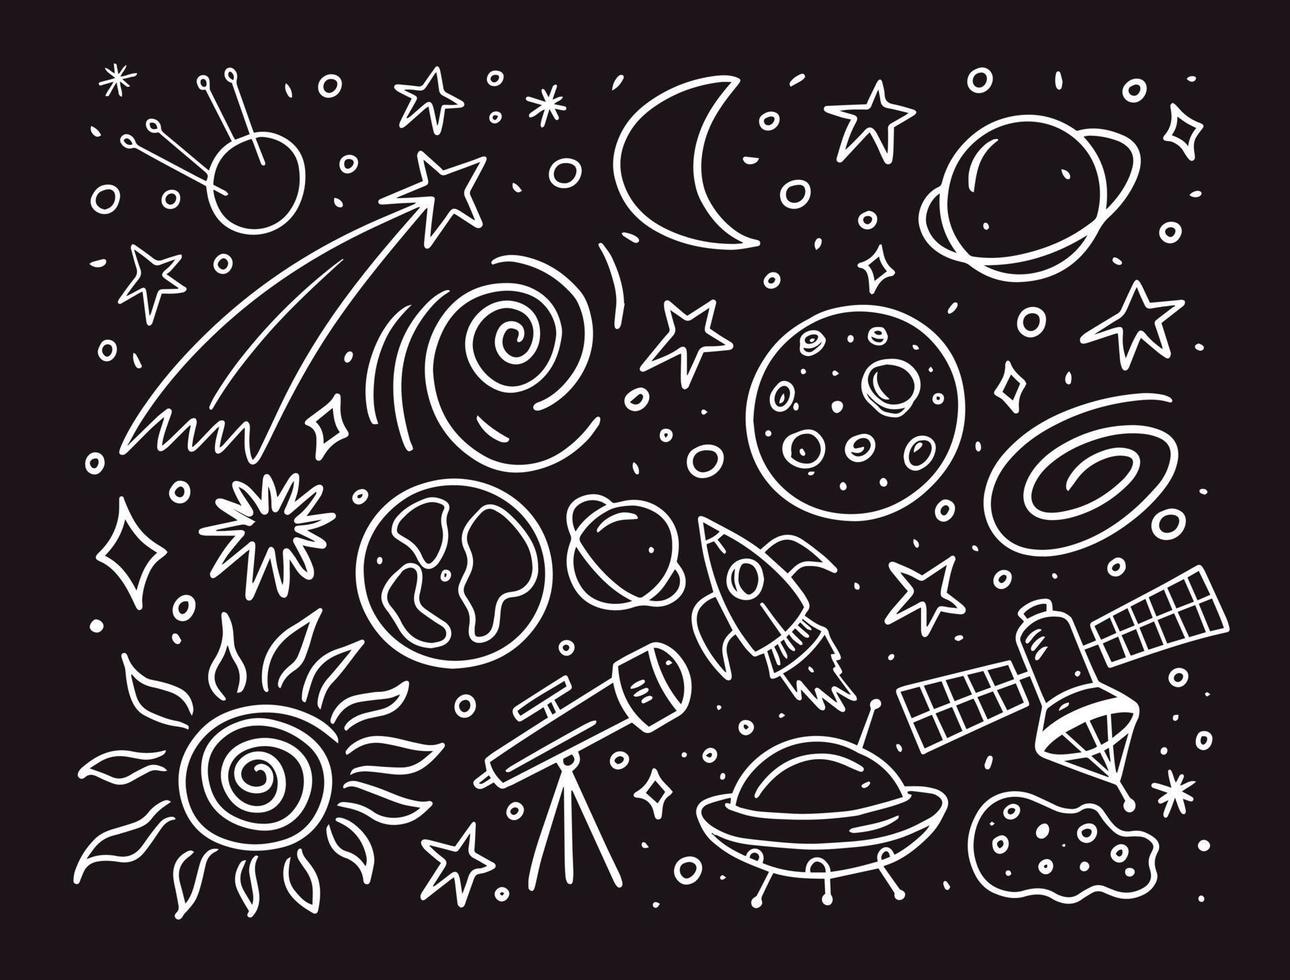 reeks ruimte of kosmos elementen en voorwerpen tekening stijl. hand- getrokken schets vector illustratie.